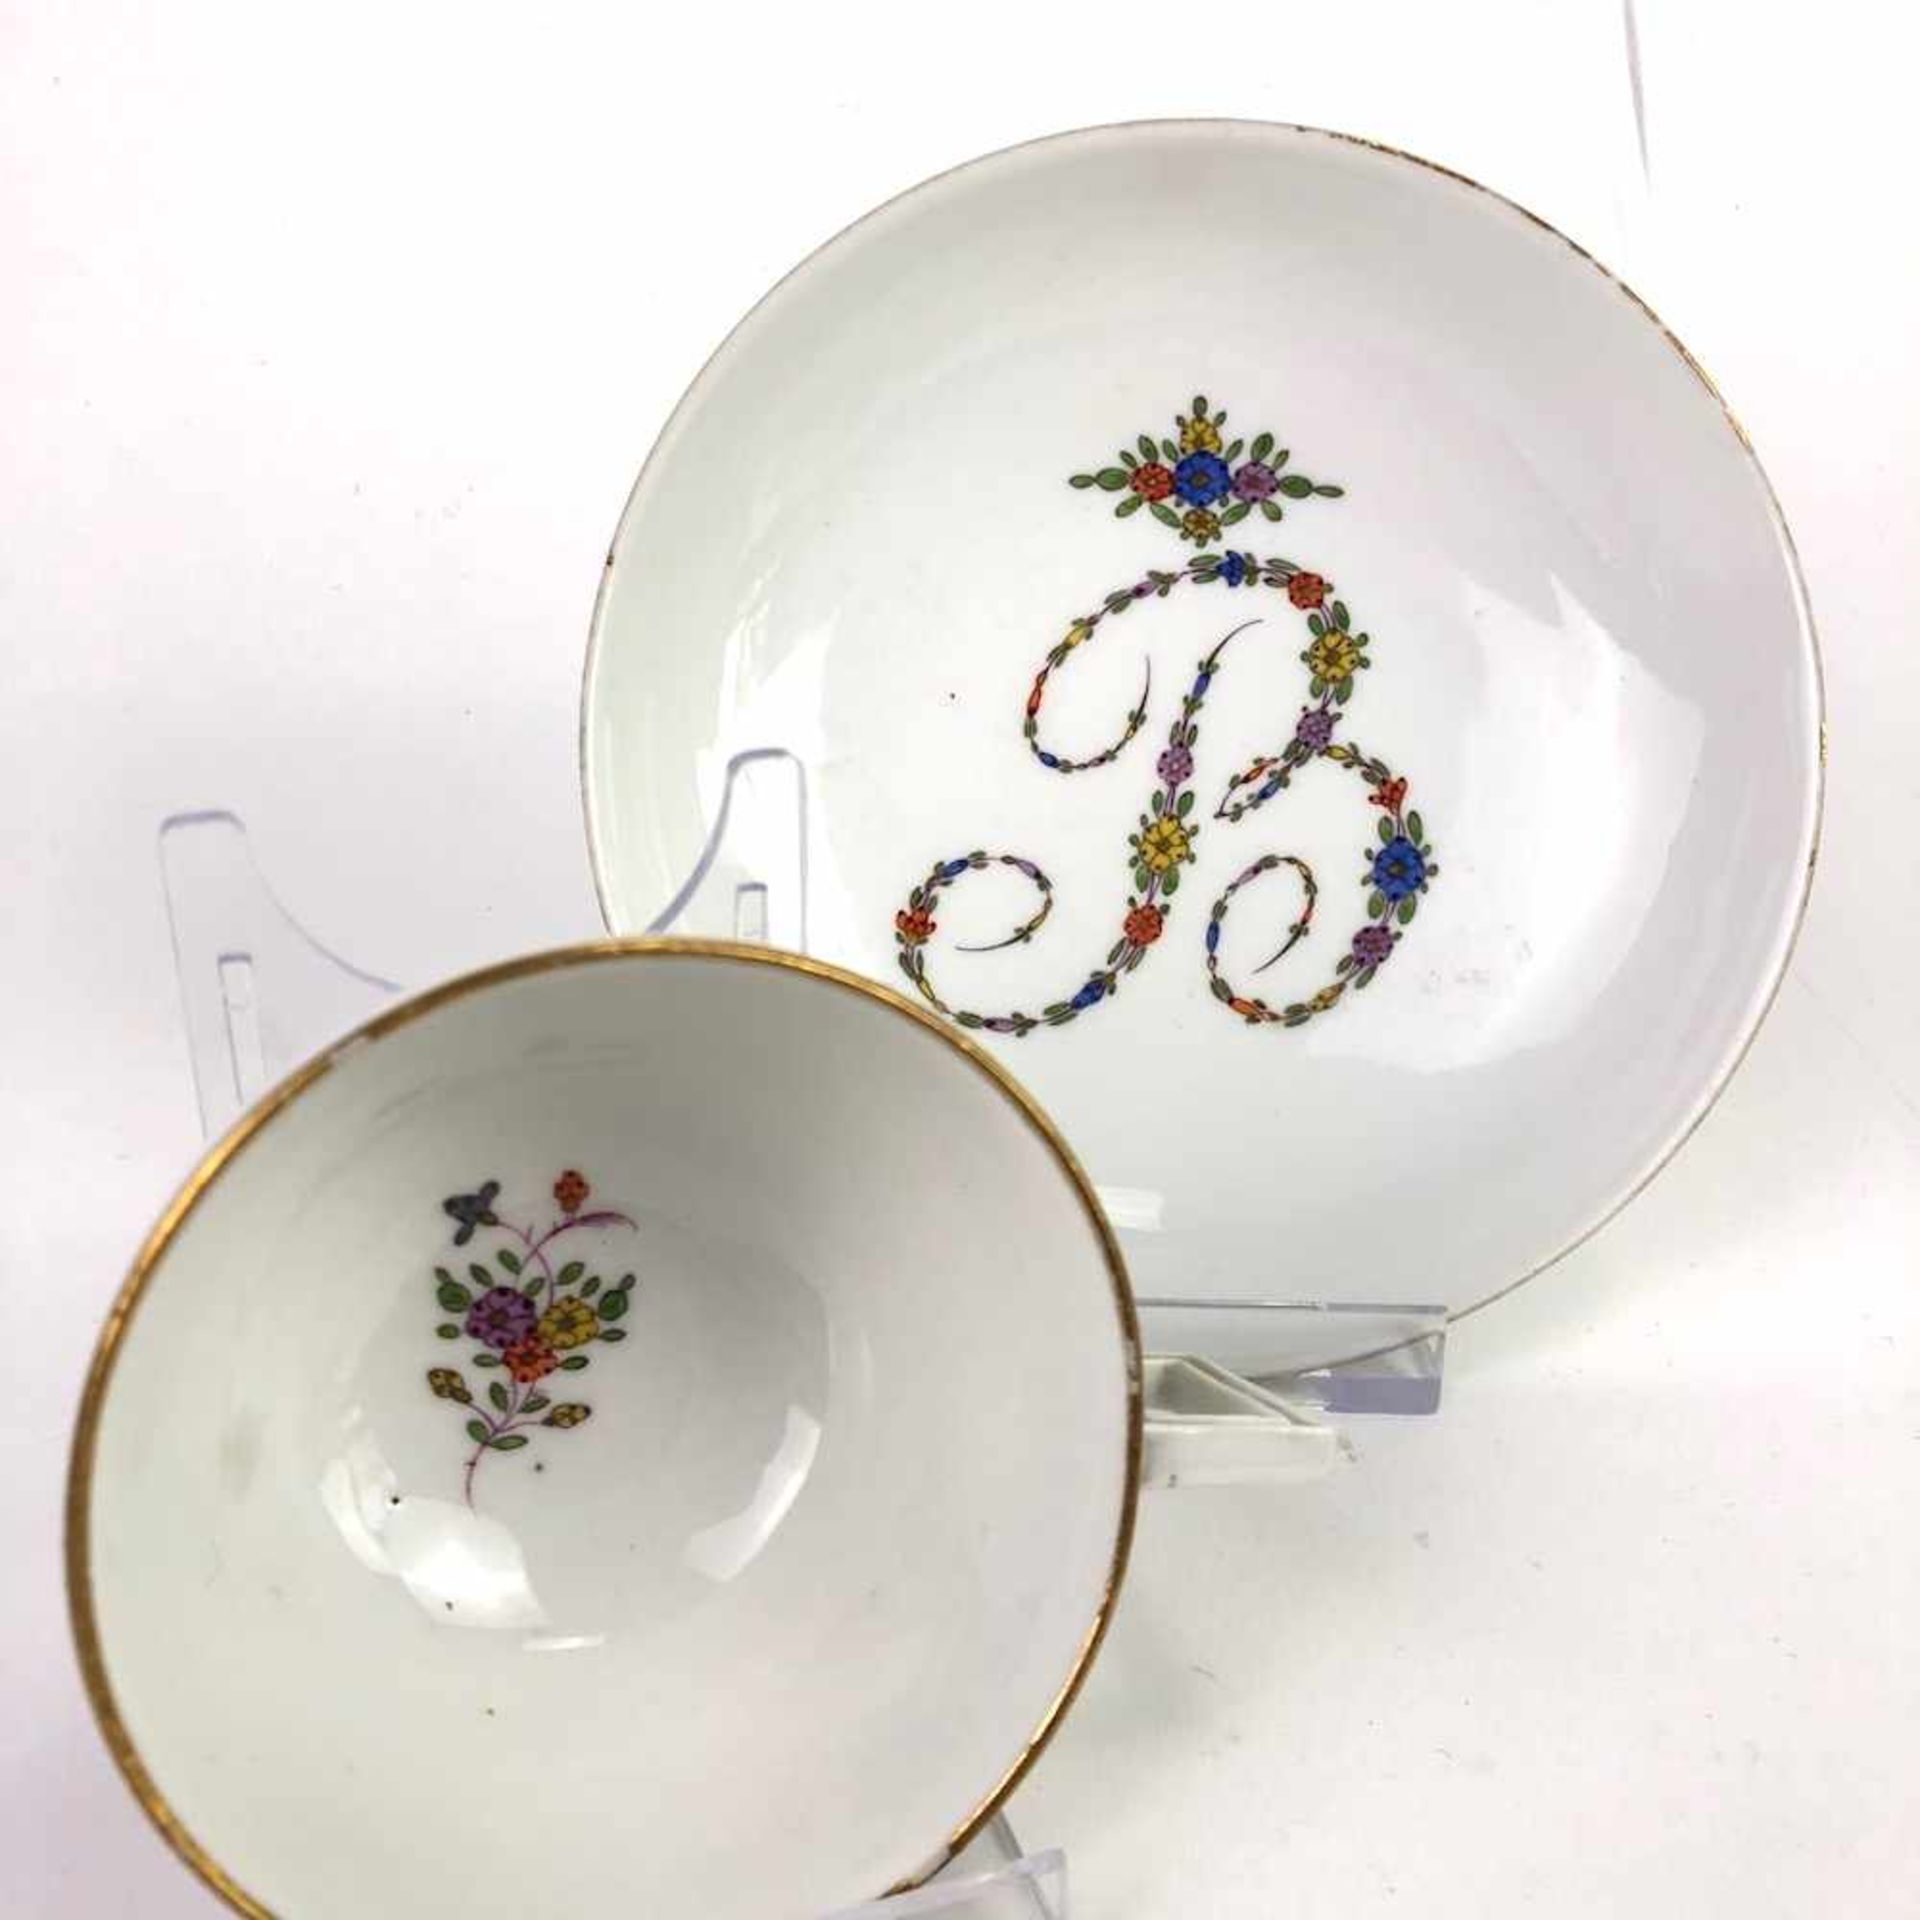 Paar Tassen: Meissen Porzellan, Marcolini Zeit 1774 - 1817.Porzellan weiß glasiert, Dekor - Bild 2 aus 3